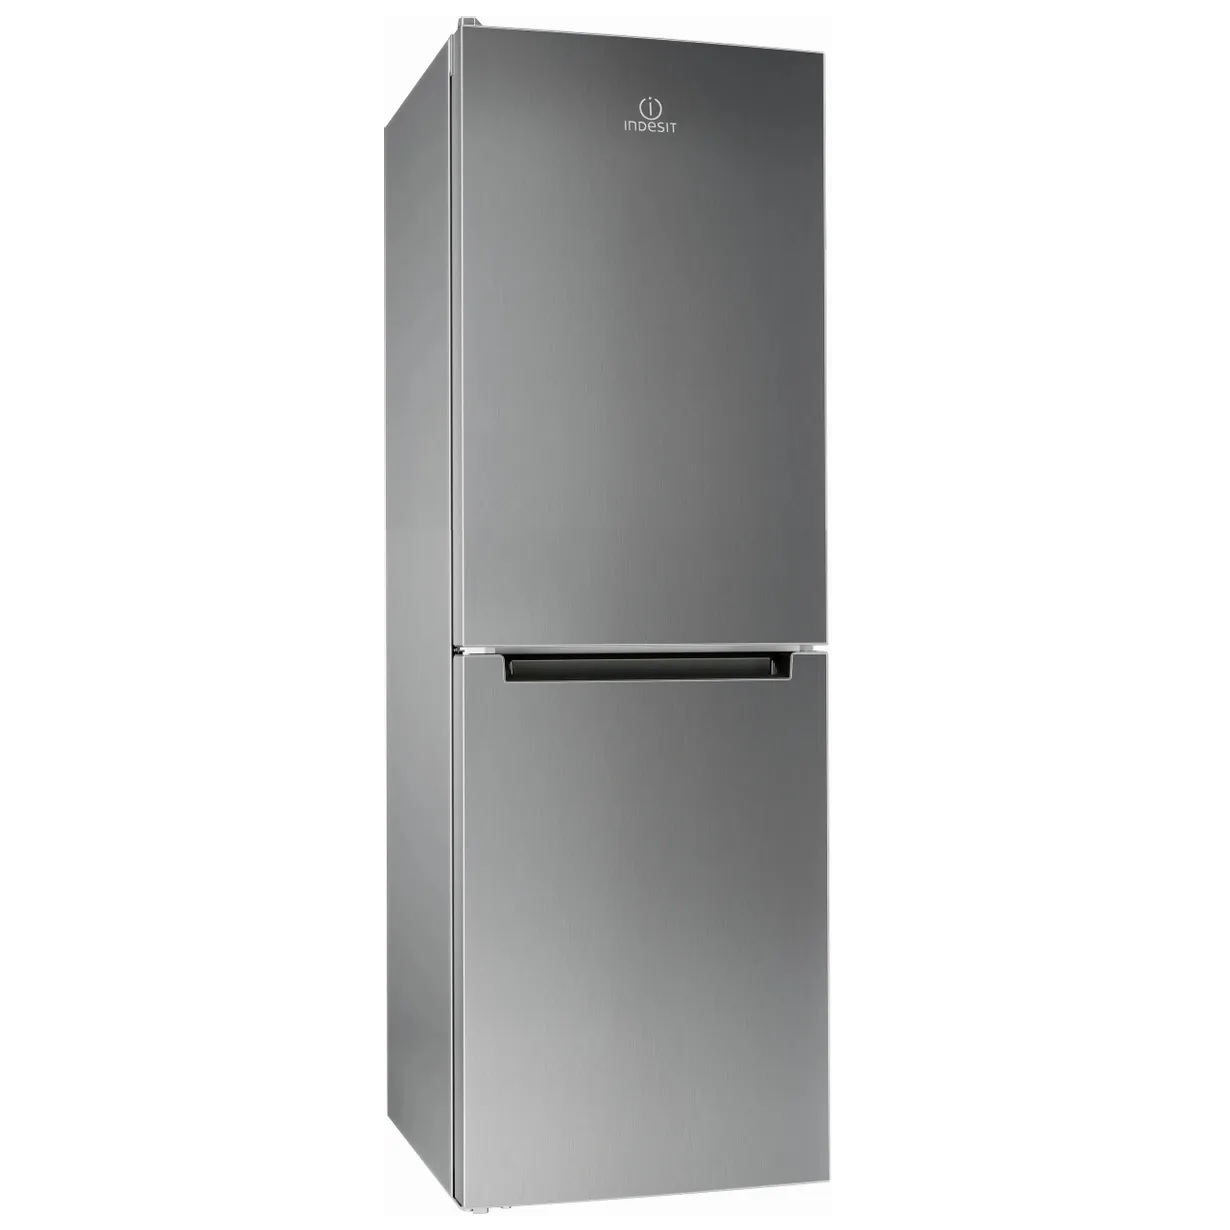 Холодильник Indesit DS 4160 S серебристый холодильник indesit tia 16 s серебристый